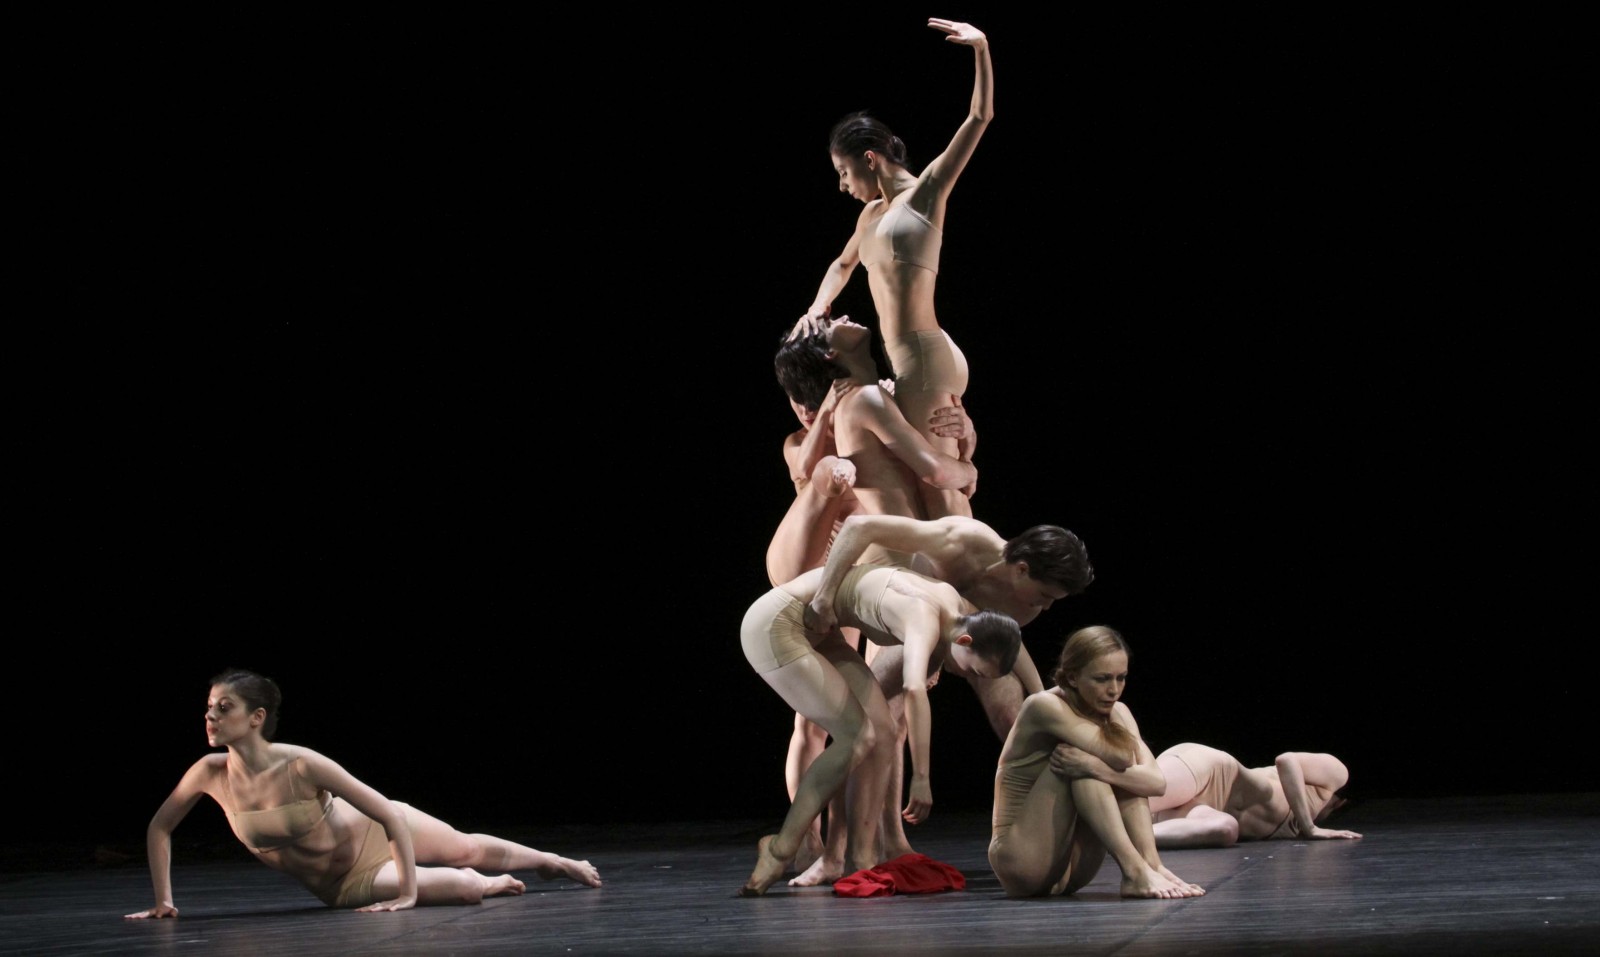 Eindrücke von "Renku", ein Ballett nach einer japanischen Gedichtform.